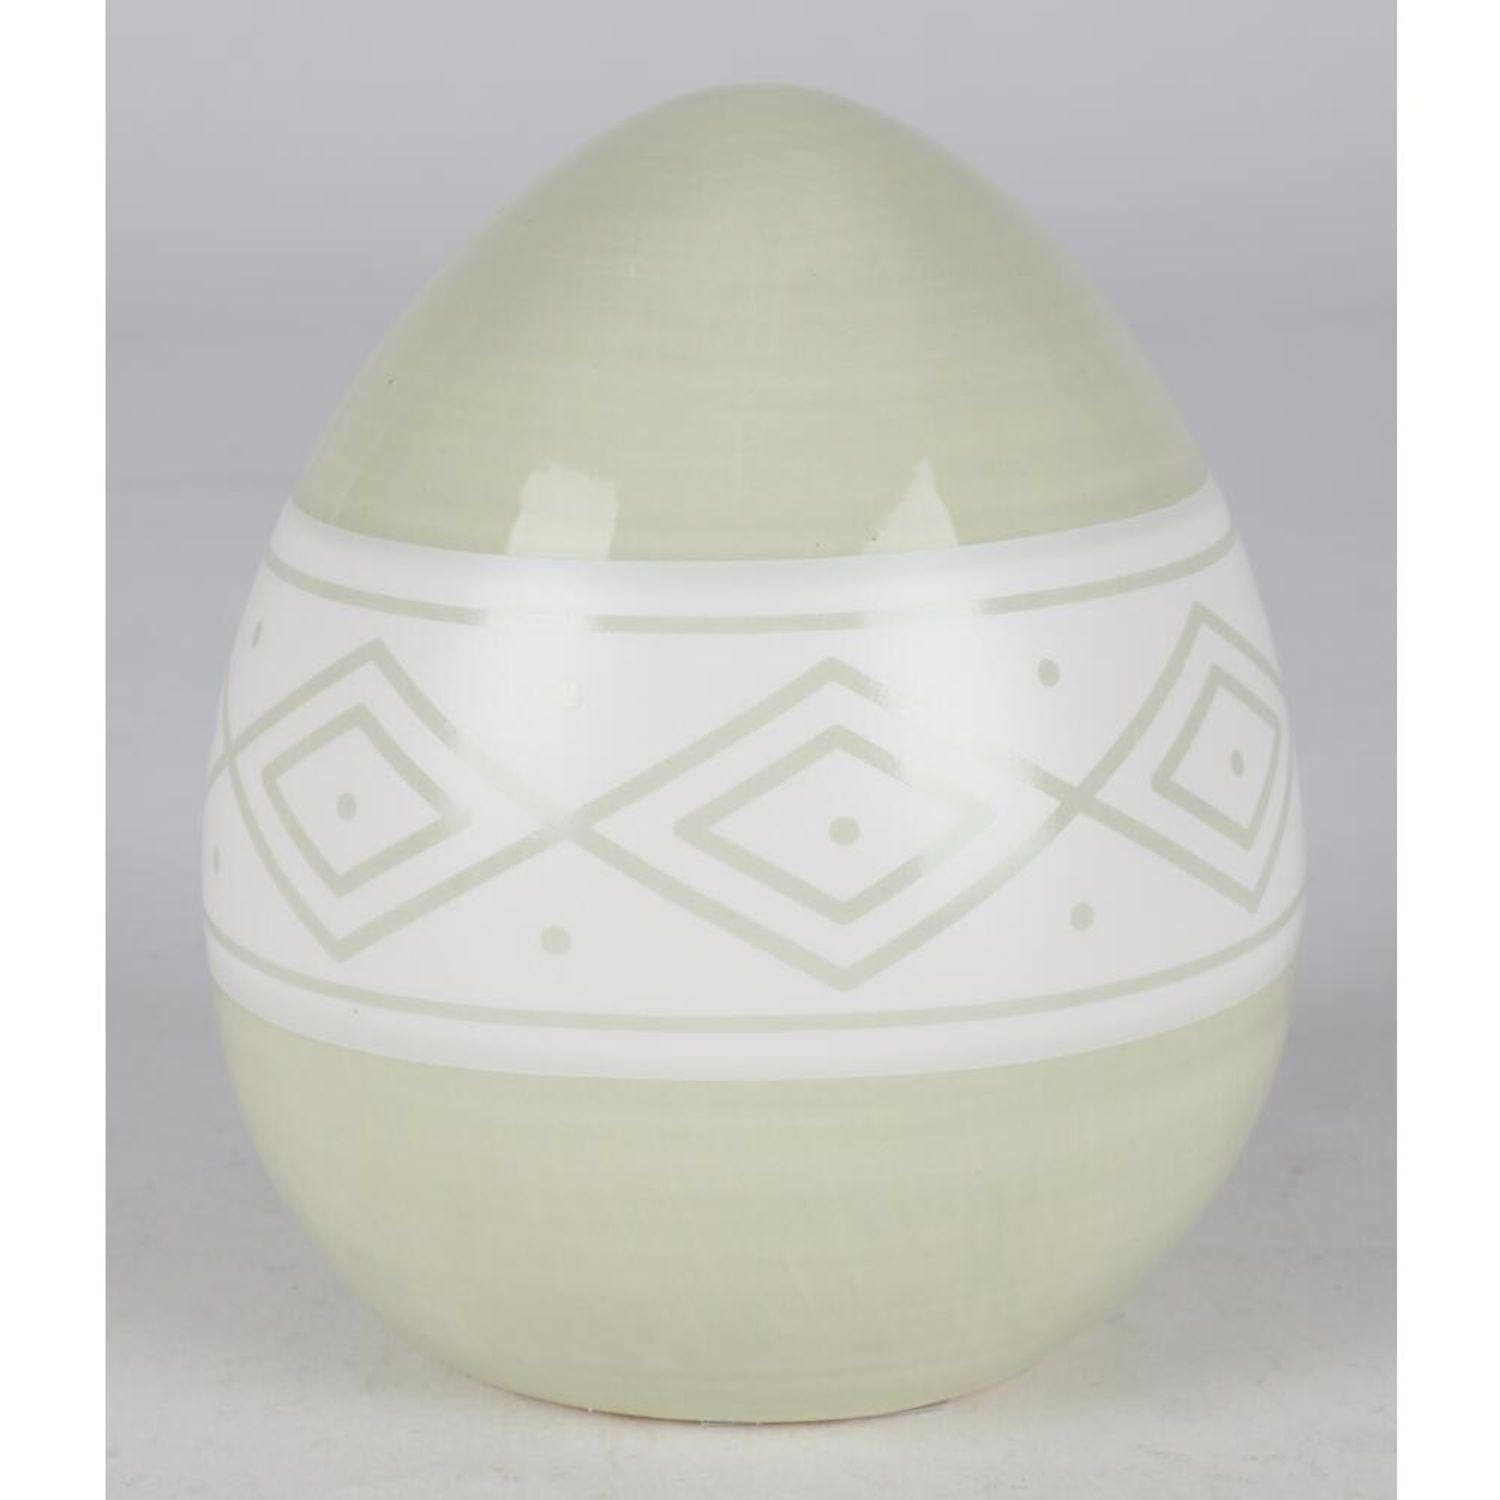 Dekofigur verschiedene Farben BURI 9x Haushalt Dekoration Keramik-Ostereier Ostern wo